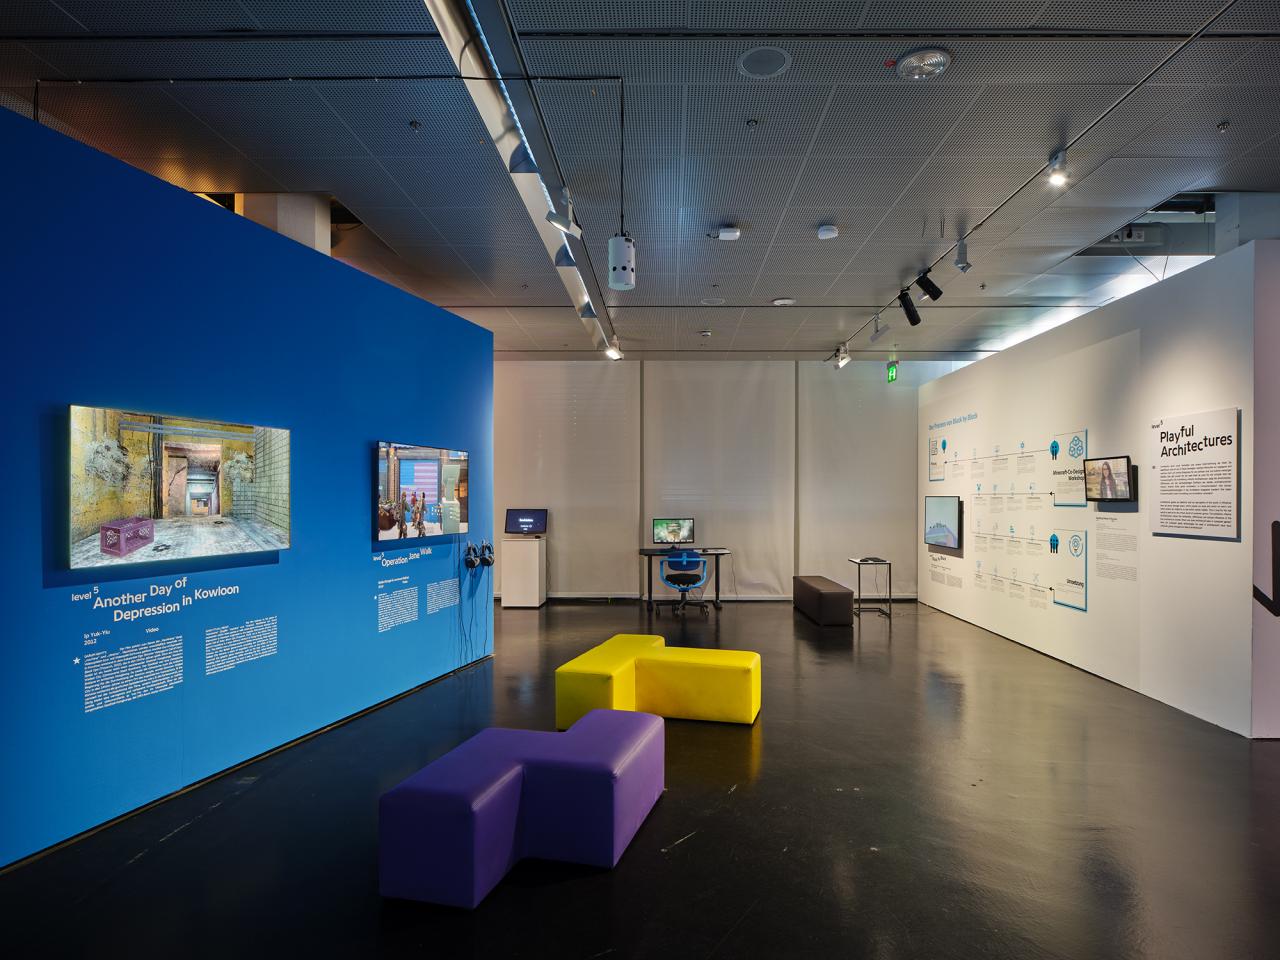 Blaue Wand in der Ausstellung »Playful Architectures« auf der linken Seite. Daran angebracht sind zwei Bildschirme, die Computerspiel zeigen. Im restlichen Ausstellungsraum verteilen sich weitere Bildschirme.